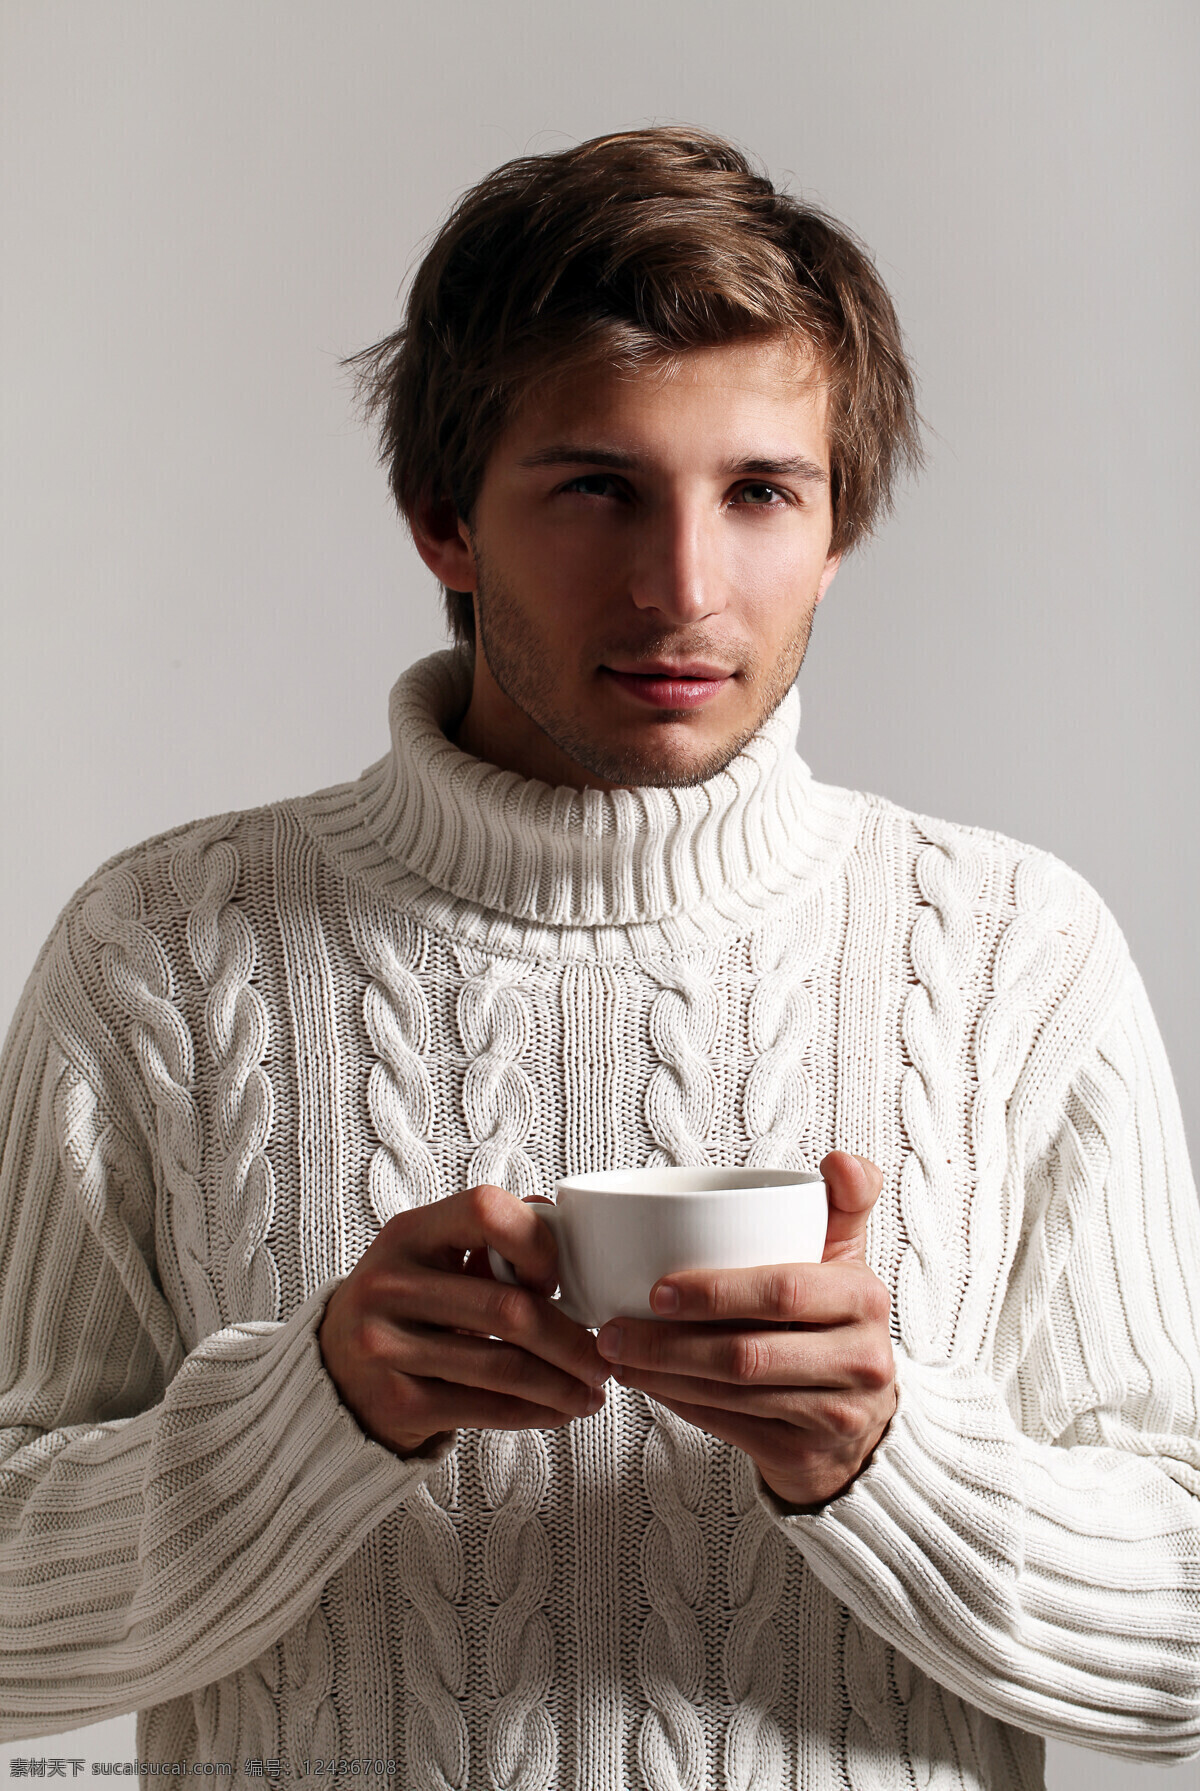 喝 咖啡 男人 外国男性 魅力男士 成熟男人 喝咖啡的男人 毛衣 男人图片 人物图片